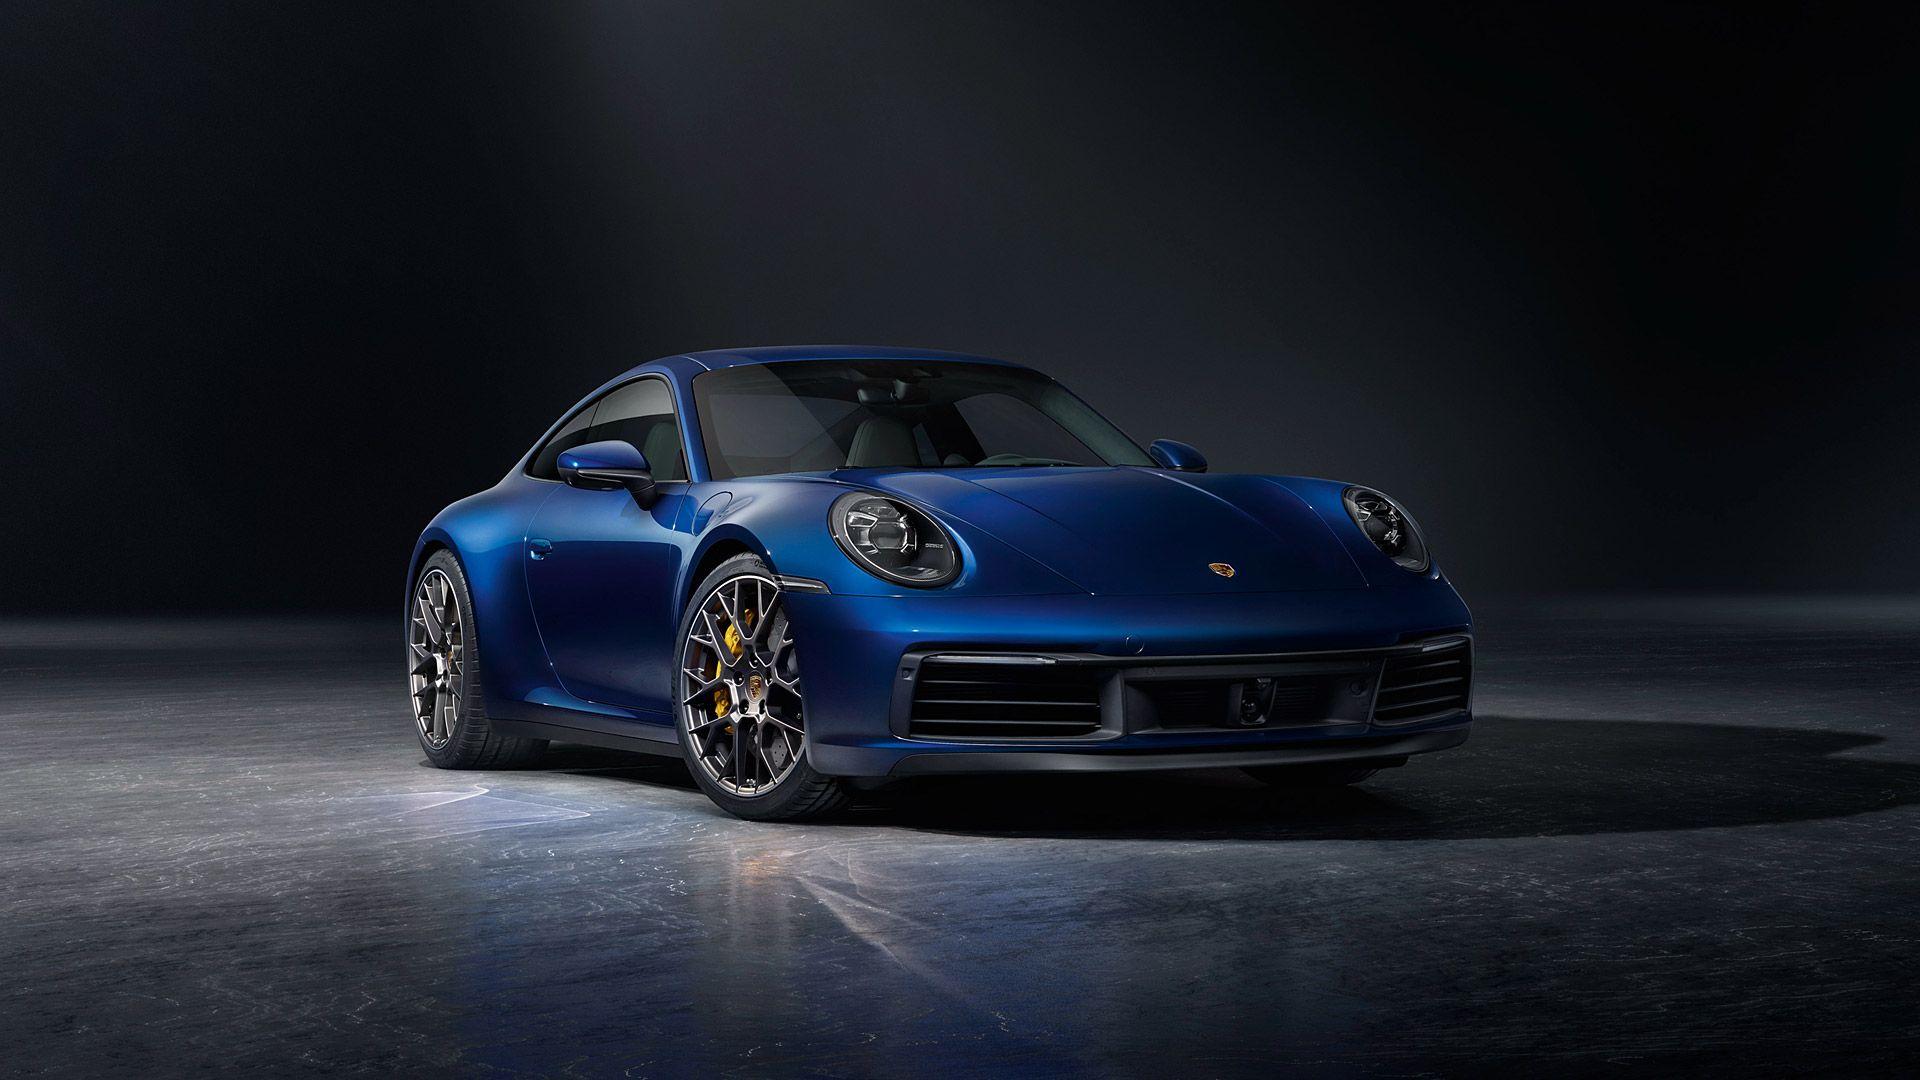 Cool Porsche Wallpapers Top Free Cool Porsche Backgrounds Wallpaperaccess